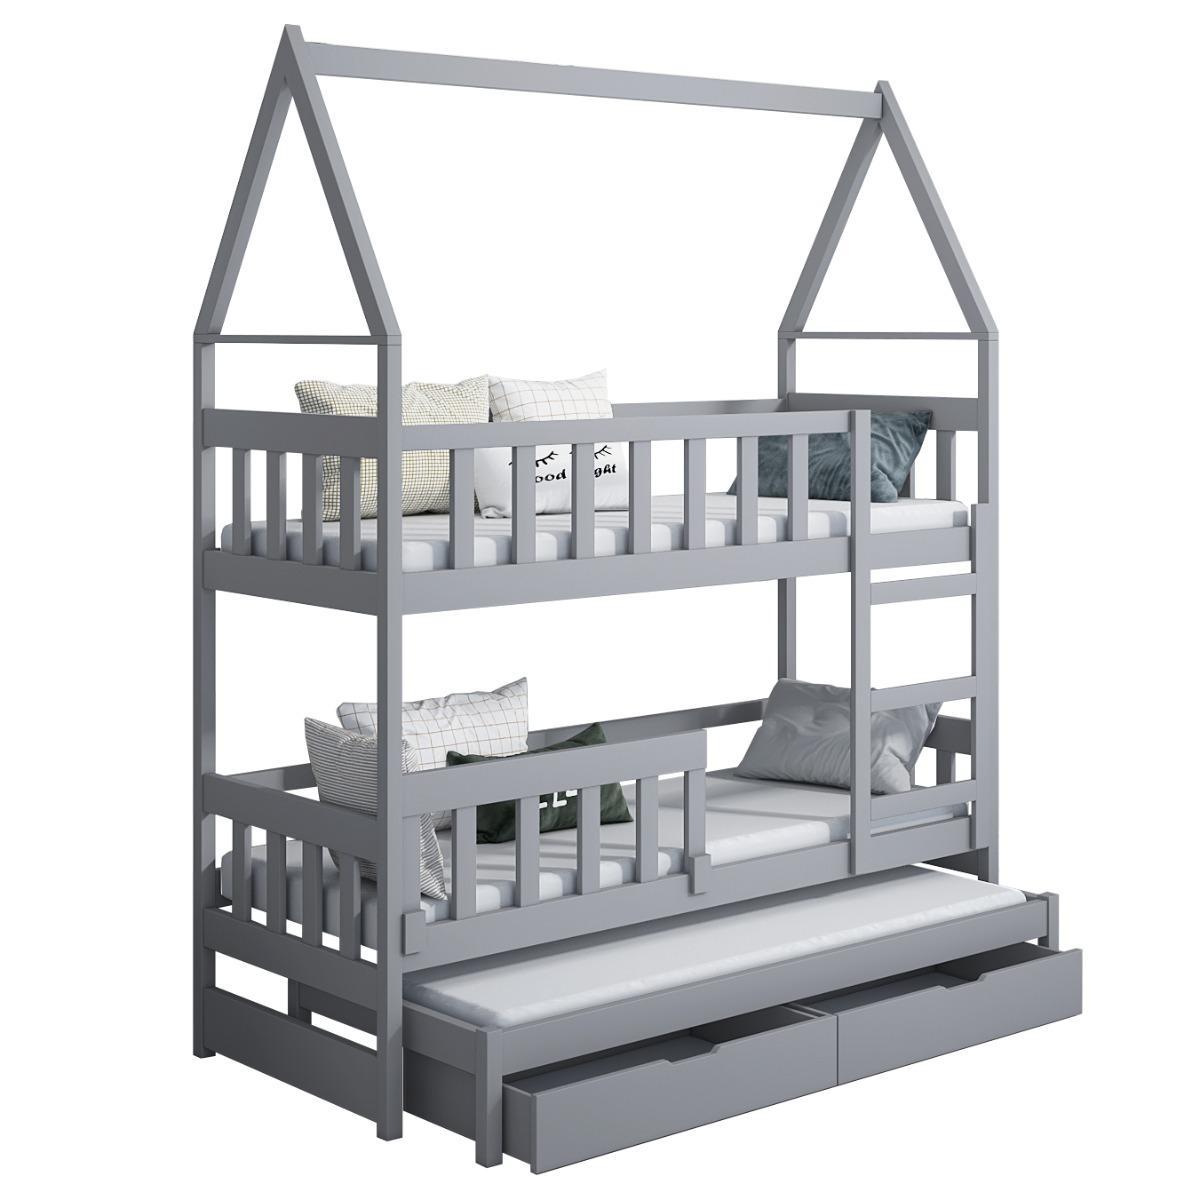 Łóżko piętrowe DOMEK drewno szare miejsce do spania dla 3 osób + materace piankowe 180x75 cm + barierka dolna do pokoju dziecka 3 Full Screen